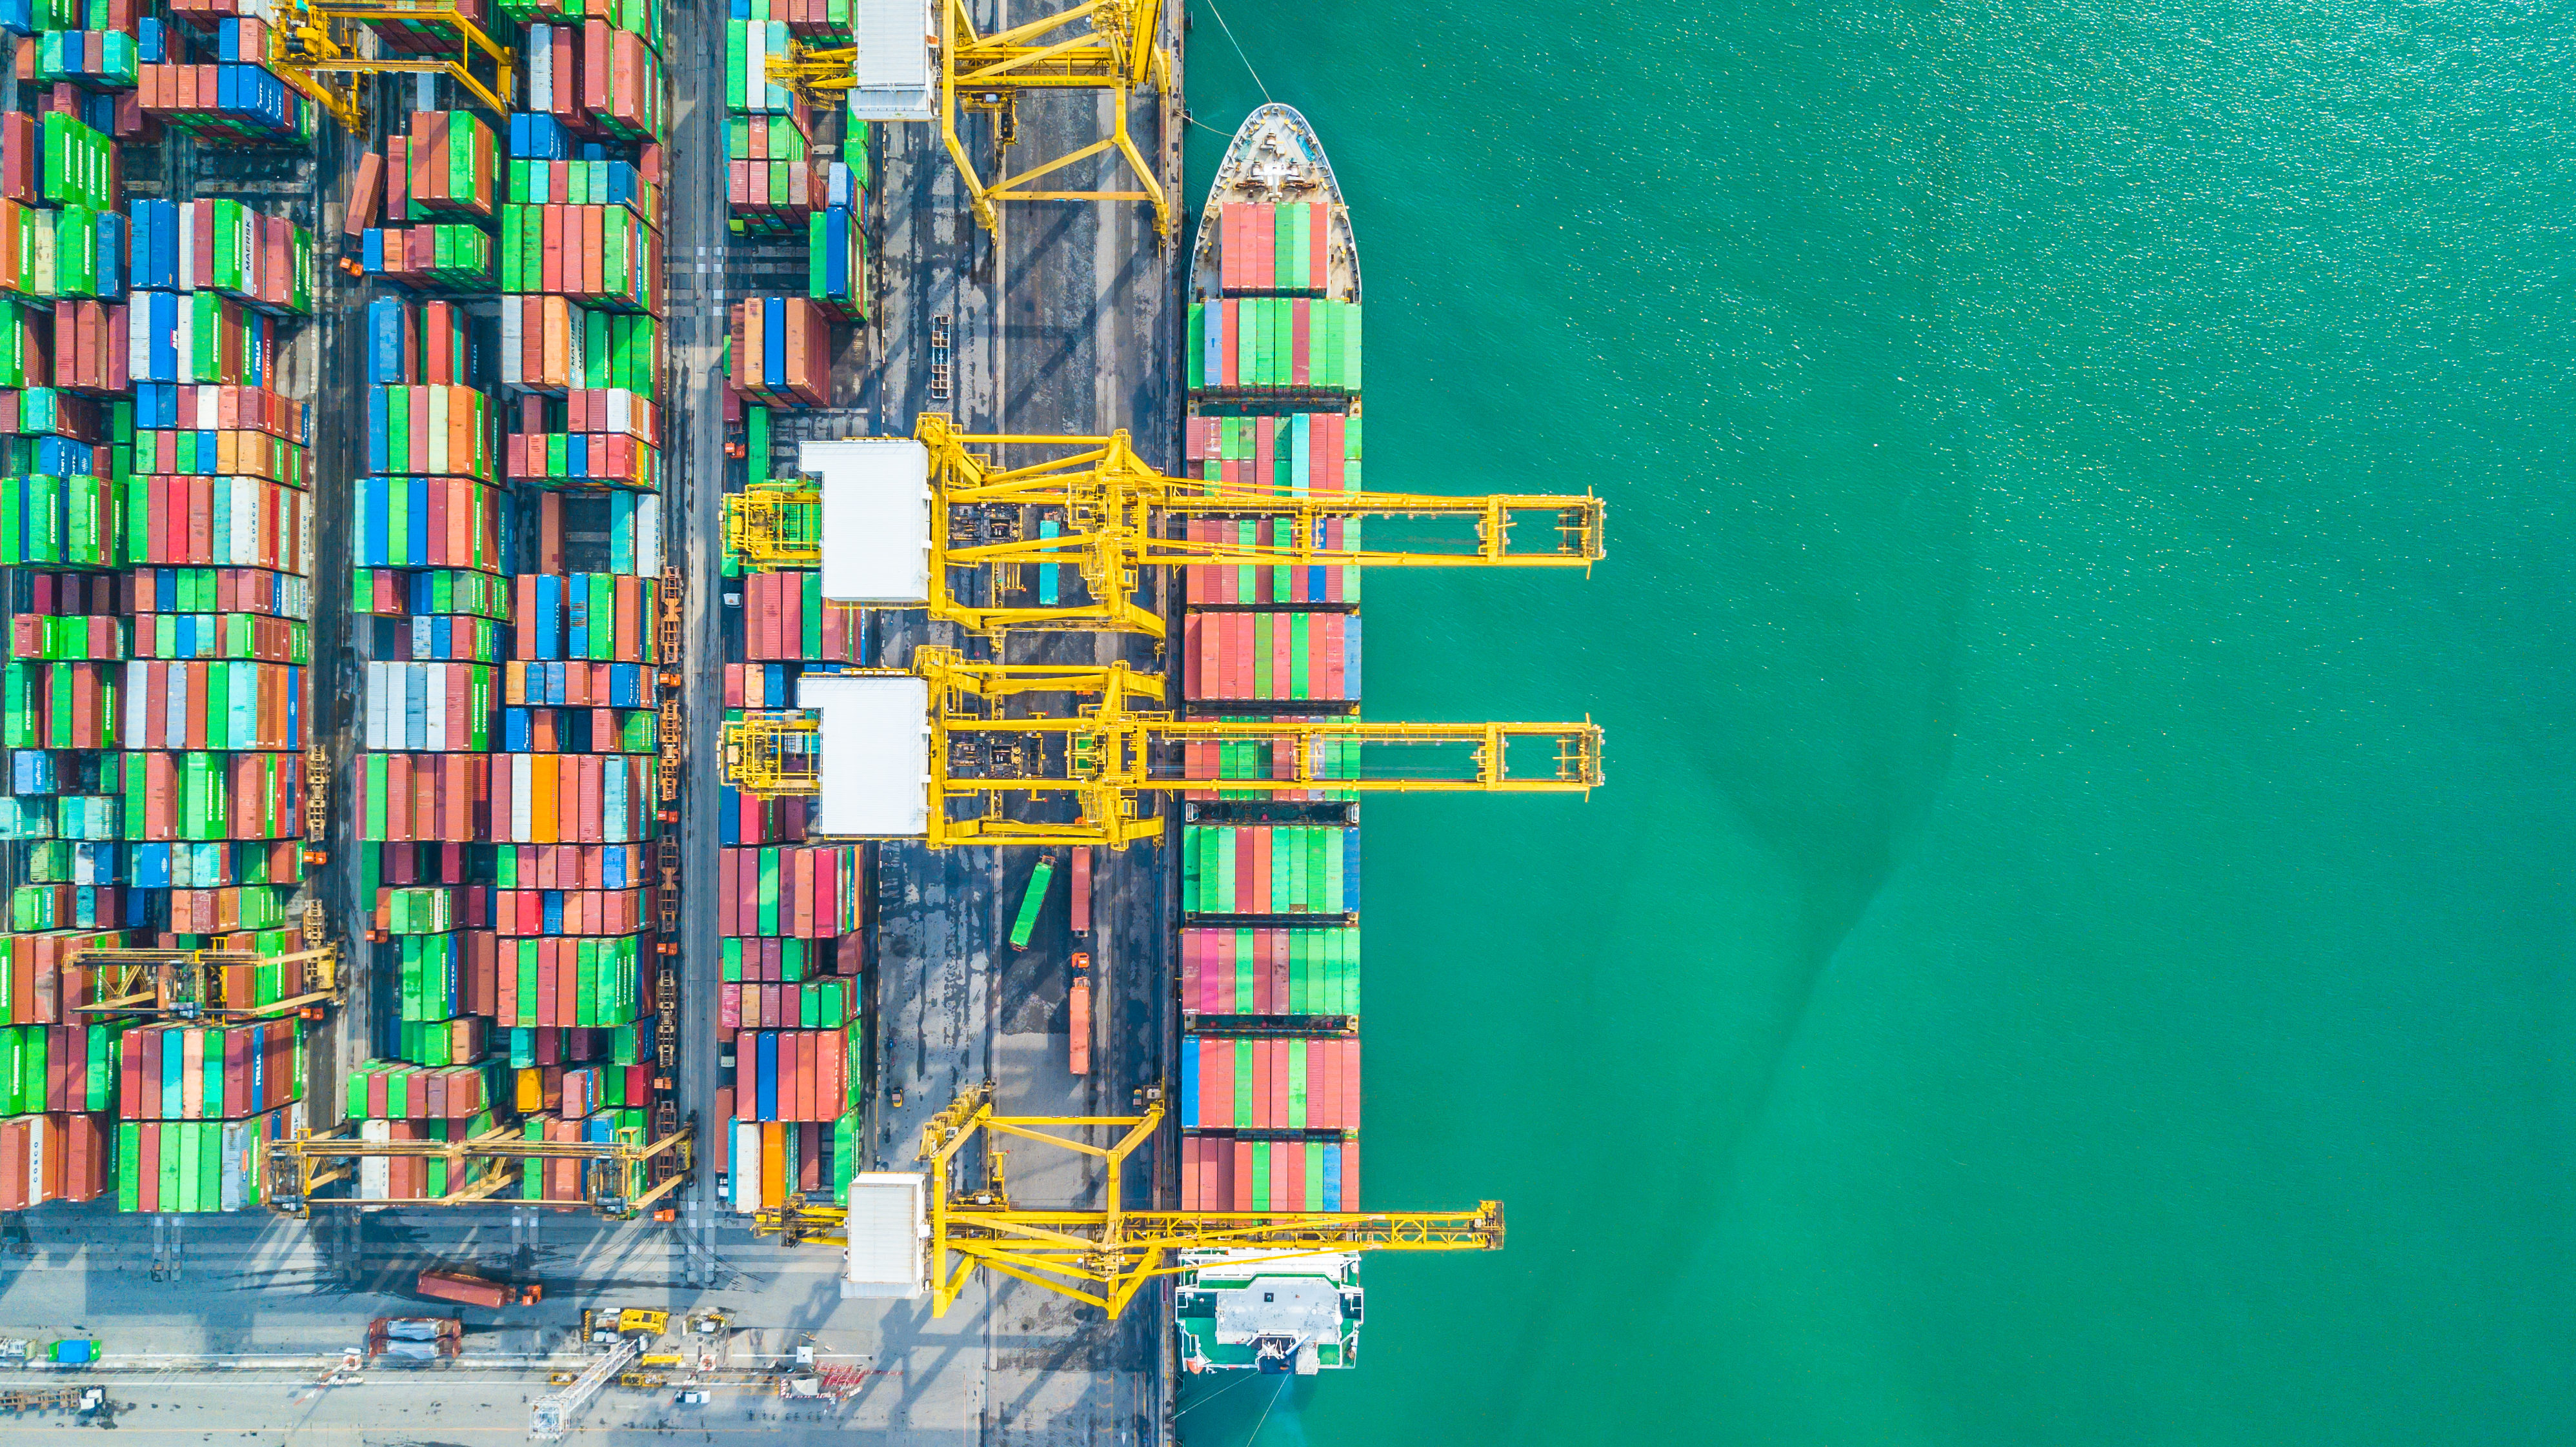 上空から見たコンテナ貨物船、外洋のコンテナ貨物船によるビジネスの輸出入ロジスティクスおよび国際輸送。